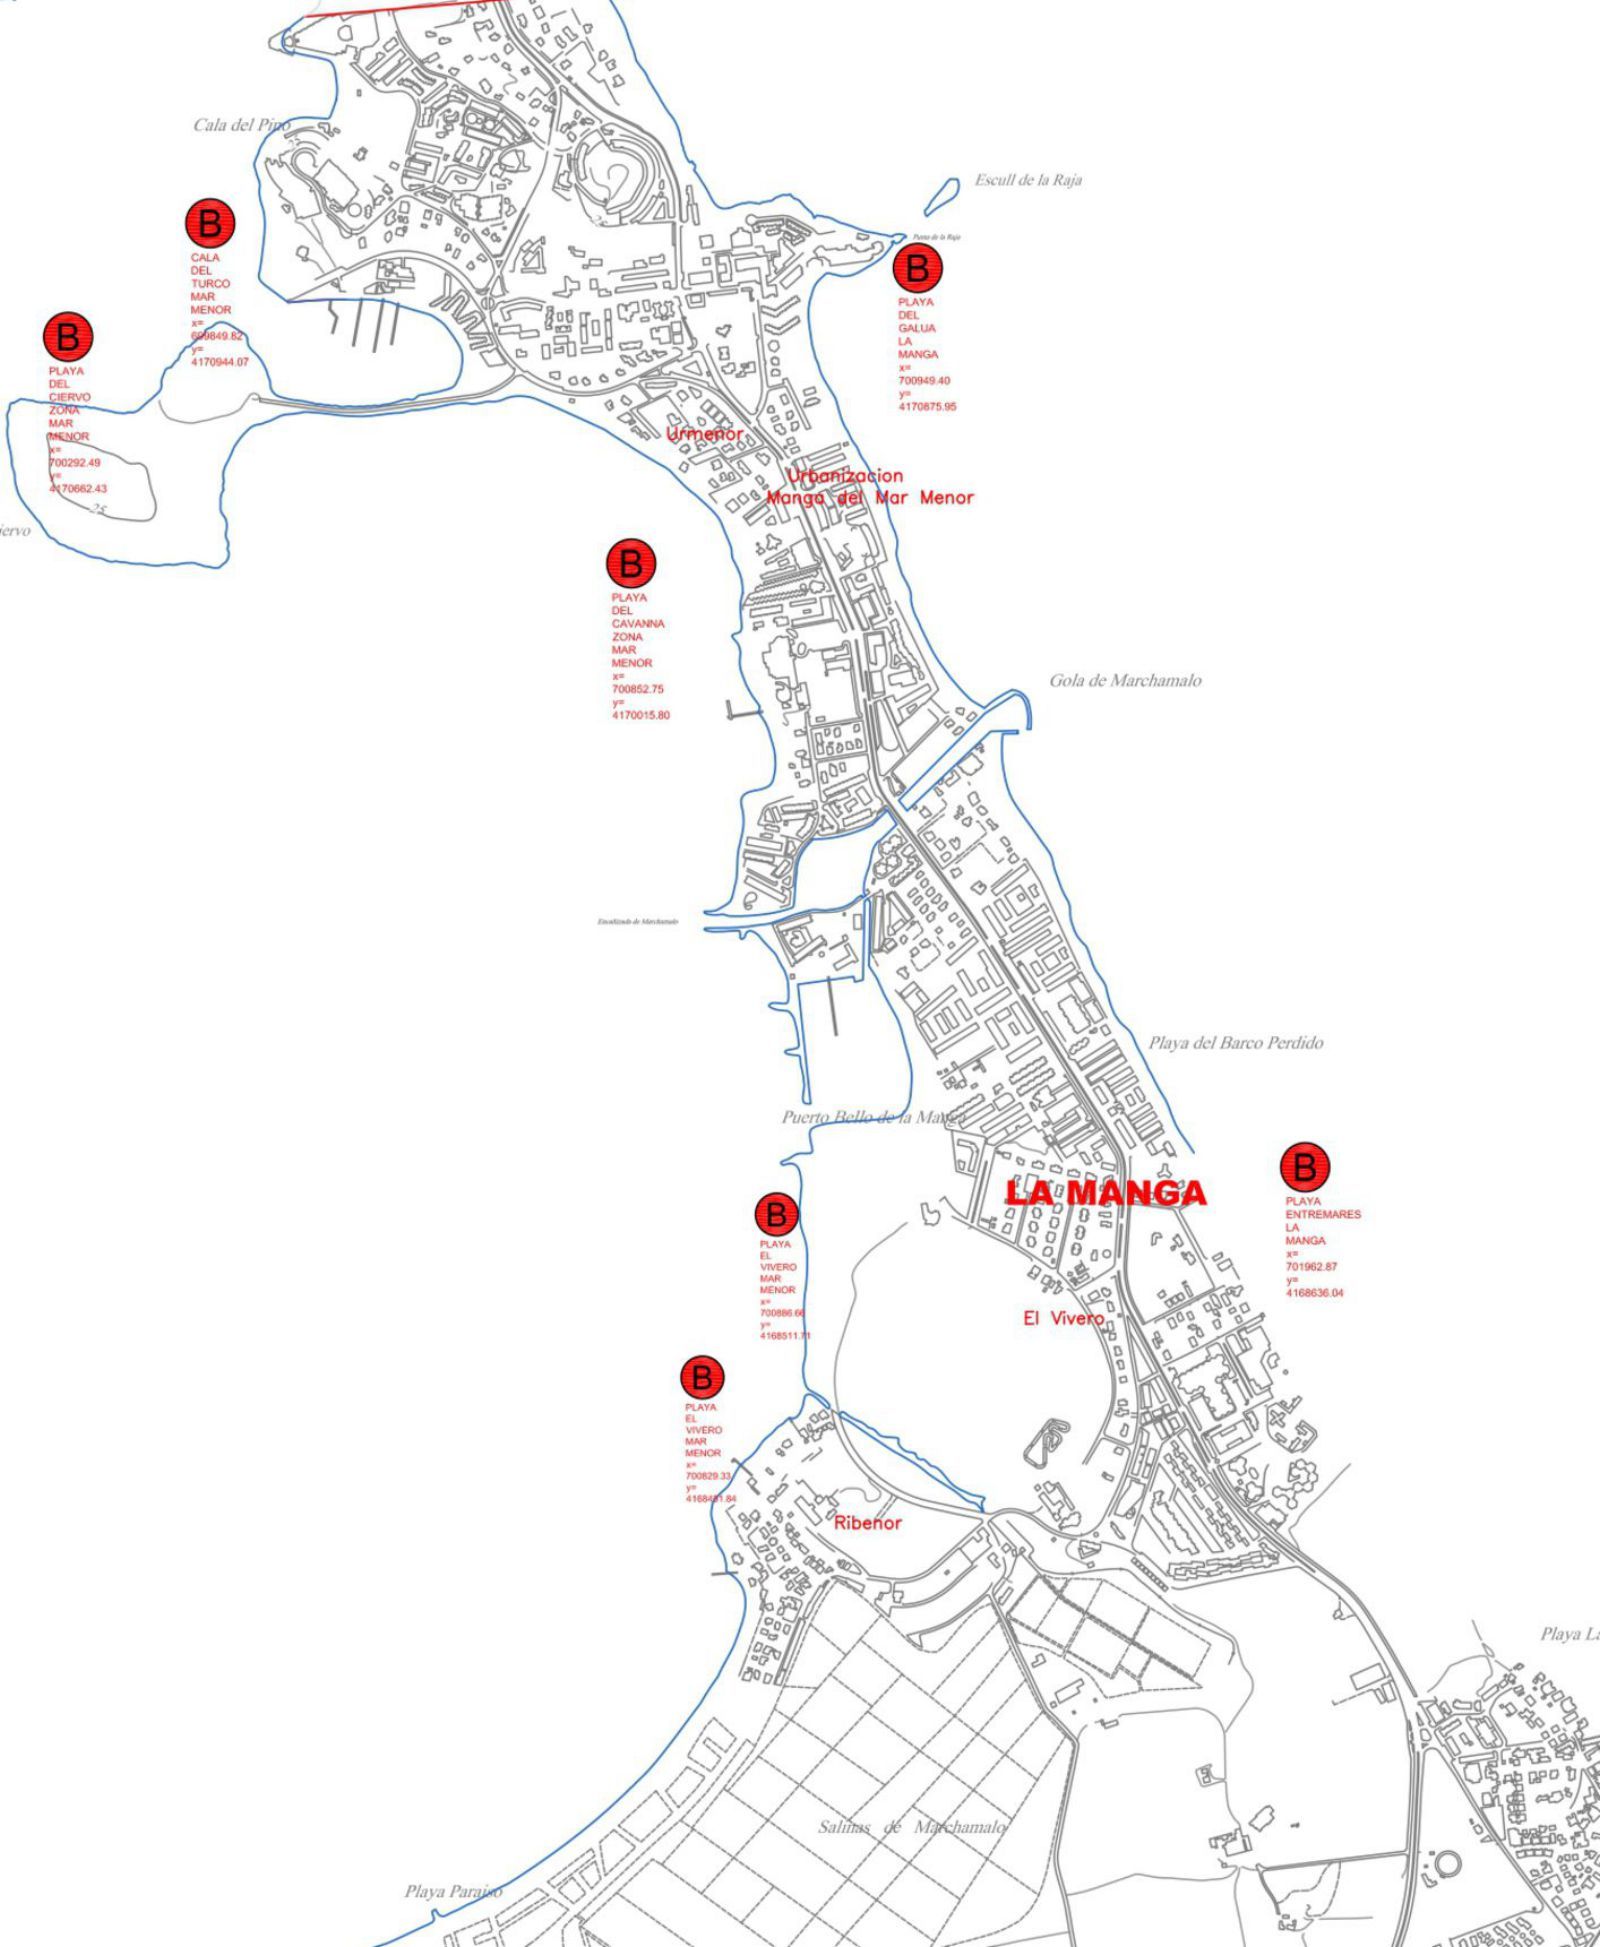 Plano municipal con las  posibles ubicaciones de las playas de La Manga para realizar celebraciones. A.C.